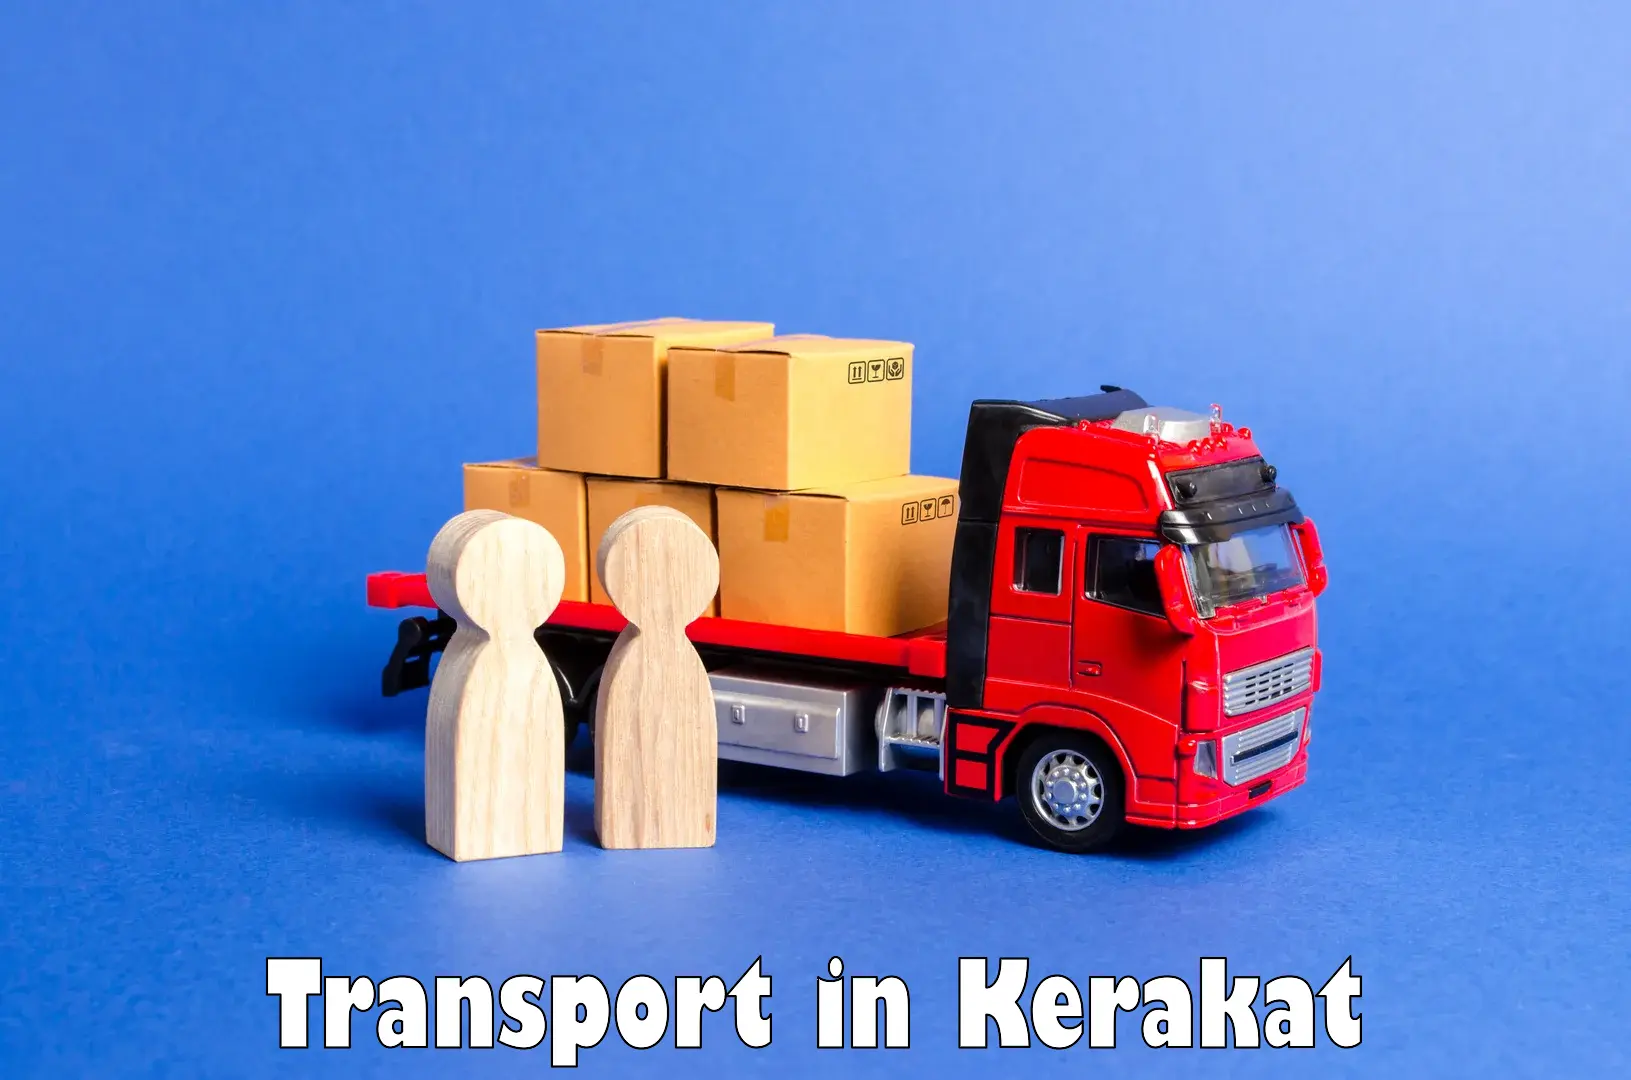 Goods transport services in Kerakat